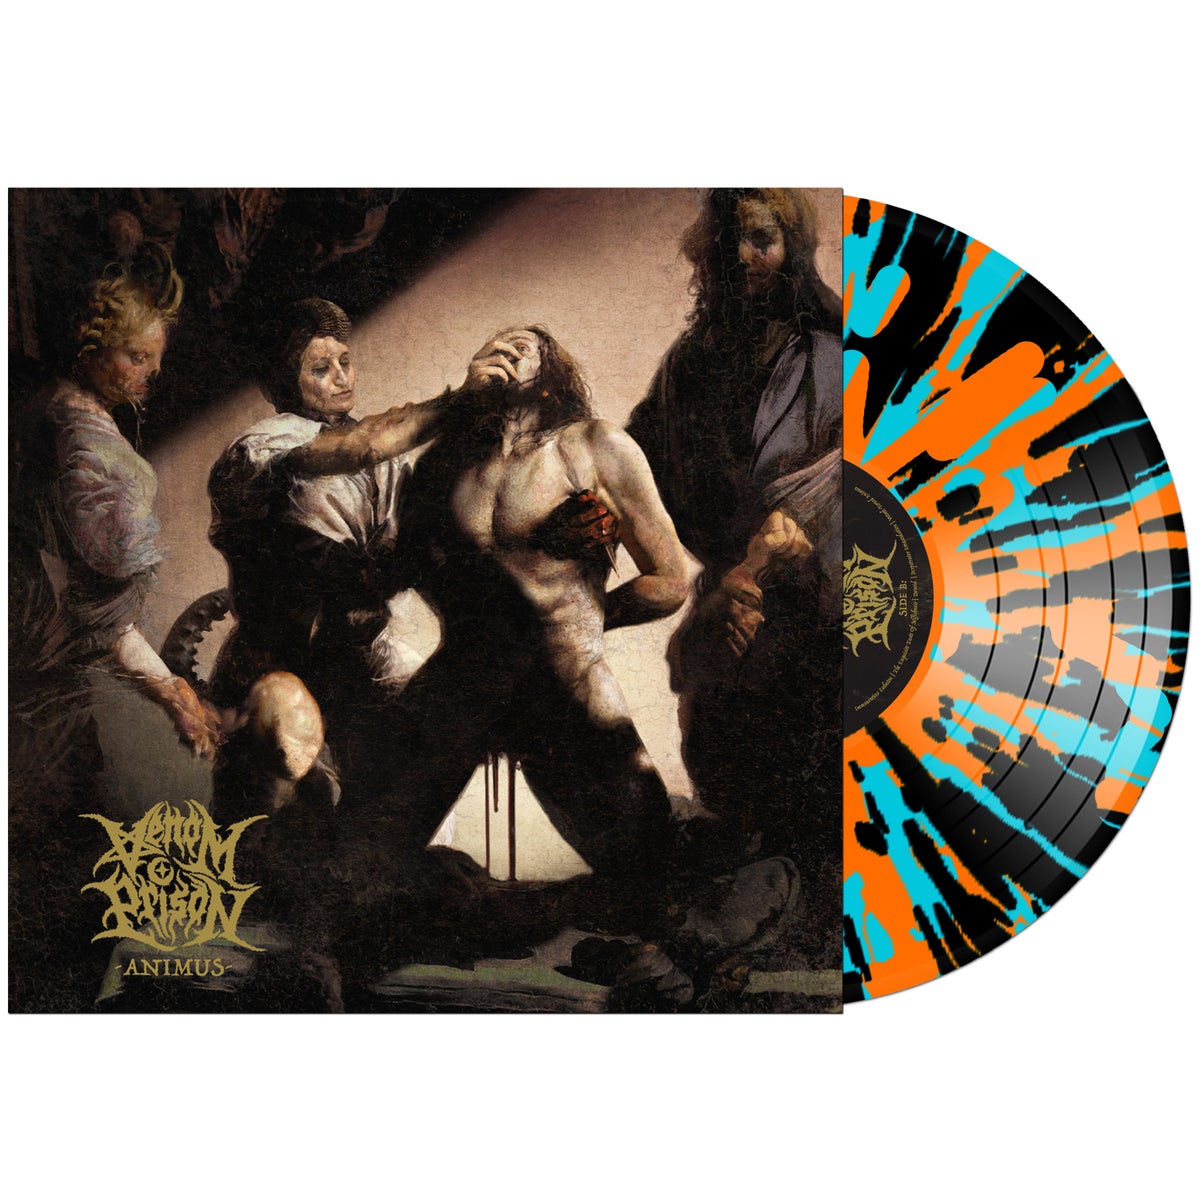 VENOM PRISION - Animus - LP - Limited Orange And Blue Splatter Vinyl